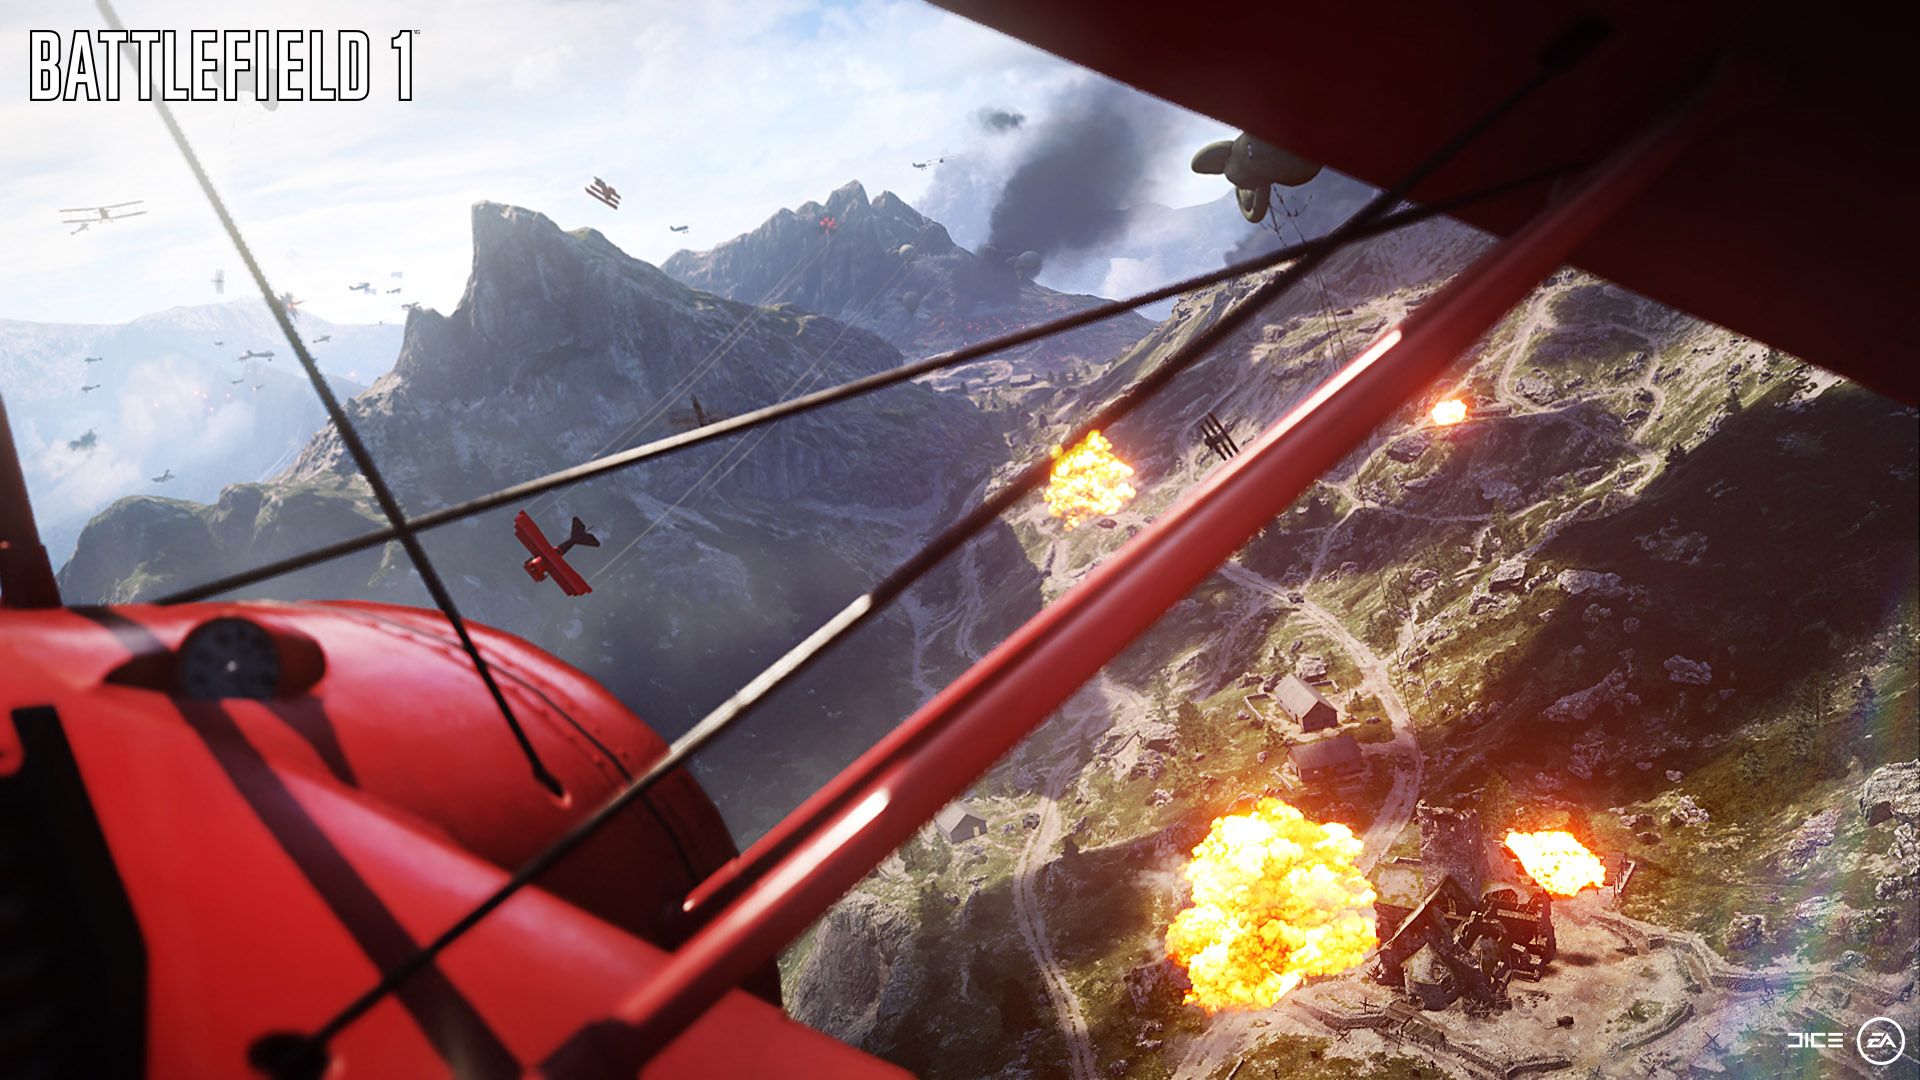 Battlefield 1 Screenshot - Red Plane